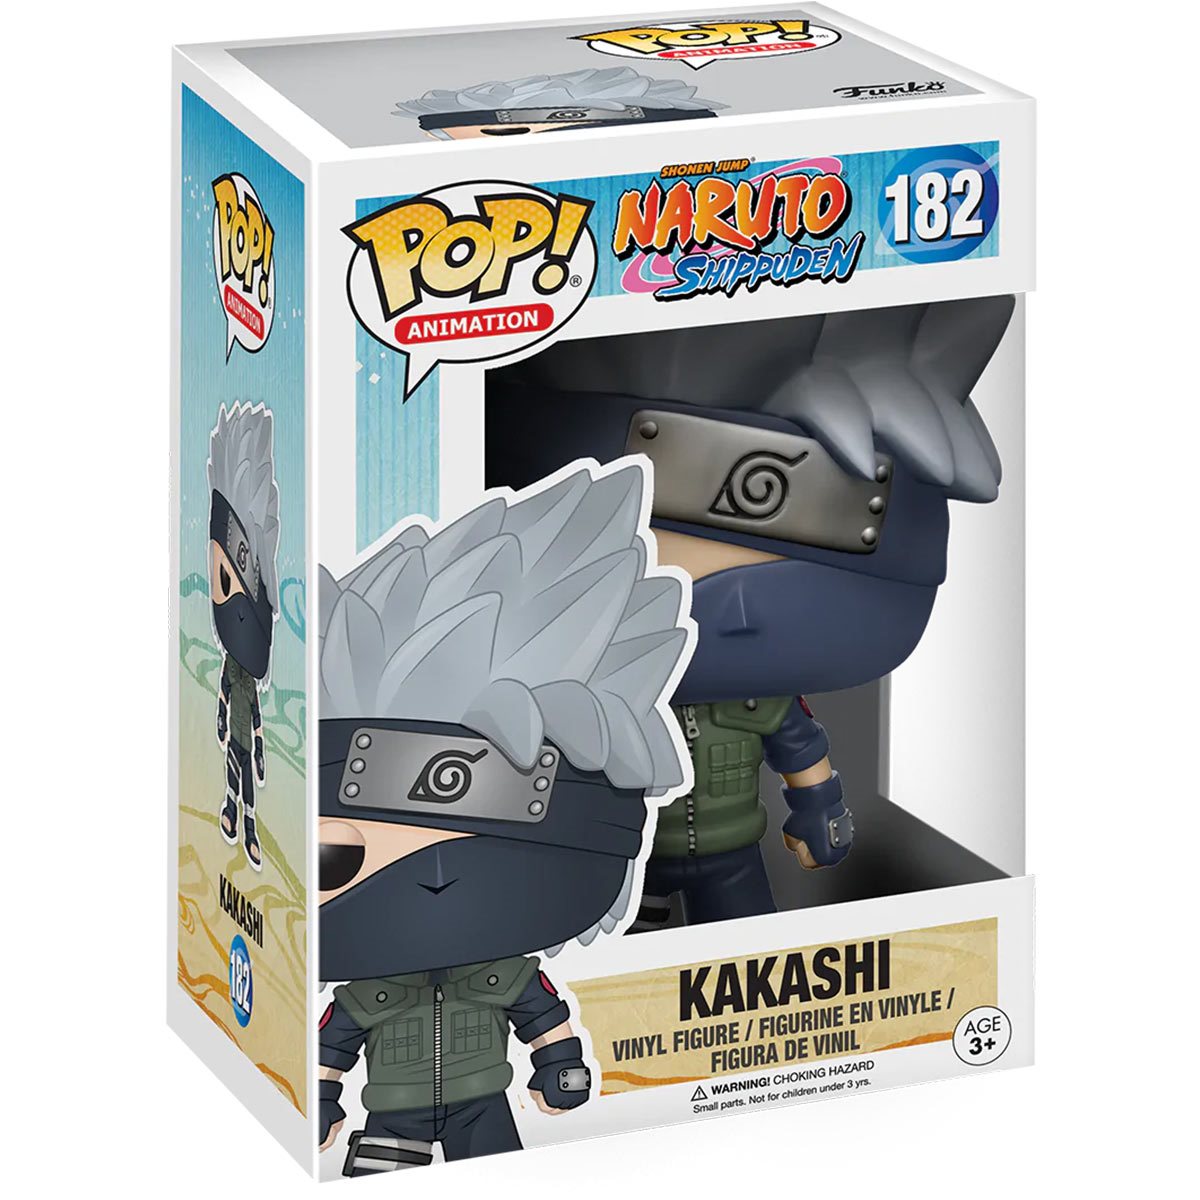 Pop! Animation 182 Naruto: Kakashi